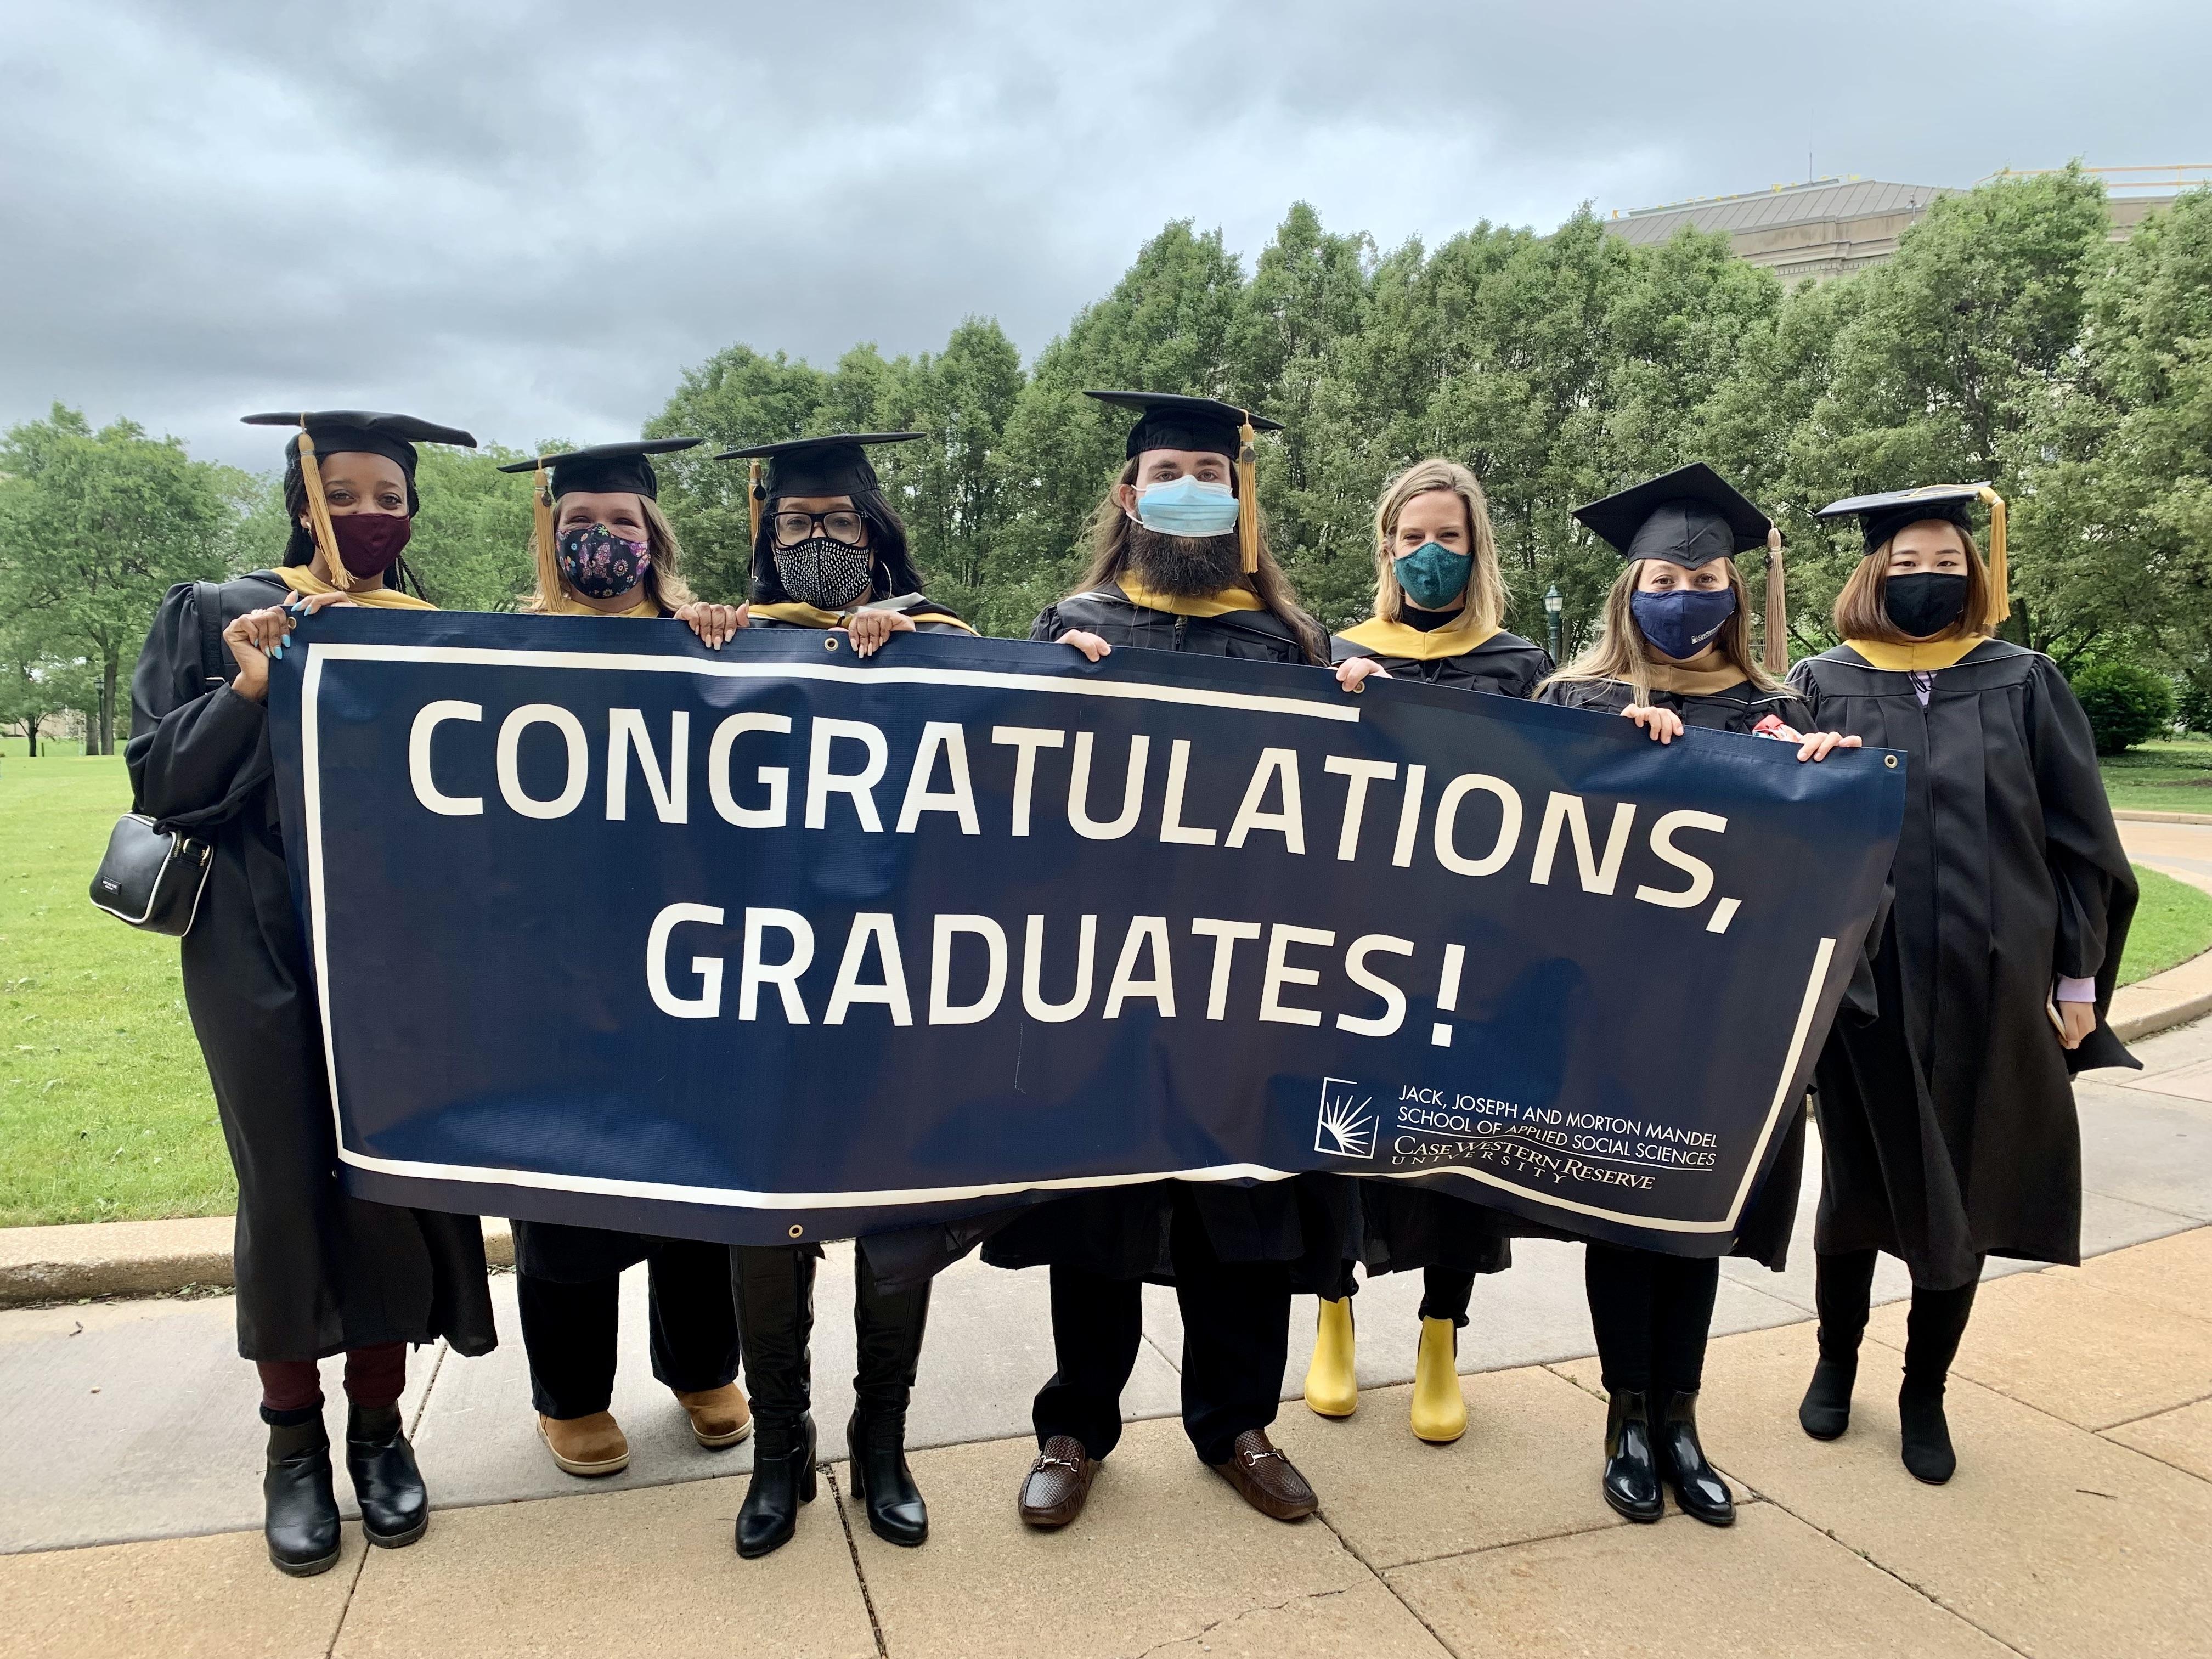 Graduates holding a banner that says, "Congratulations, Graduates!"